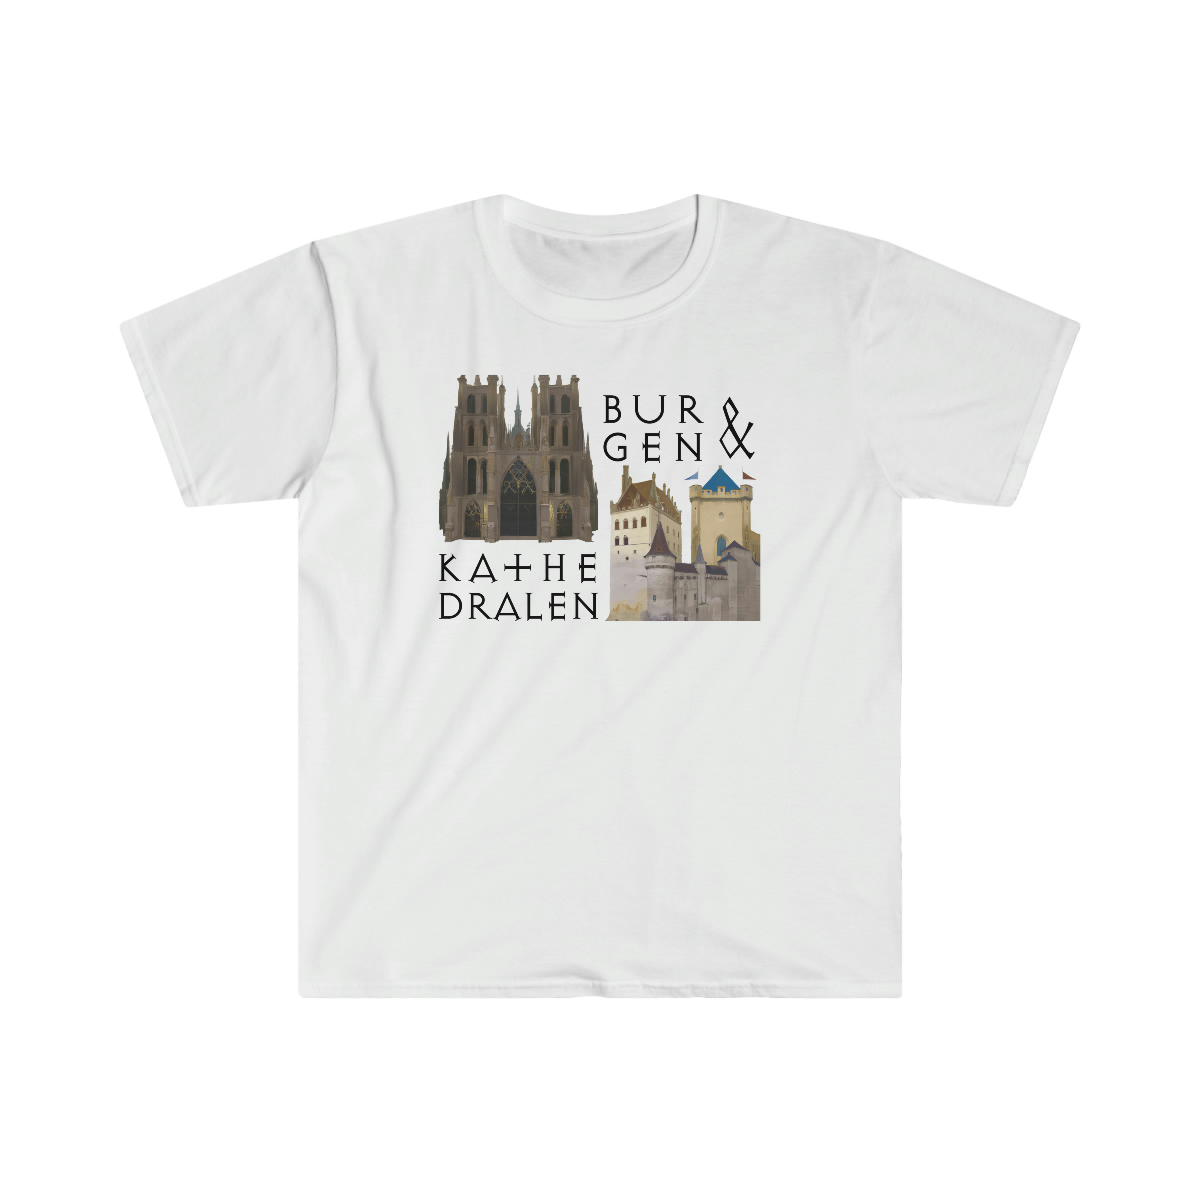 Featured image for “Burgen-und-Kathedralen Gemälde - T-Shirt”